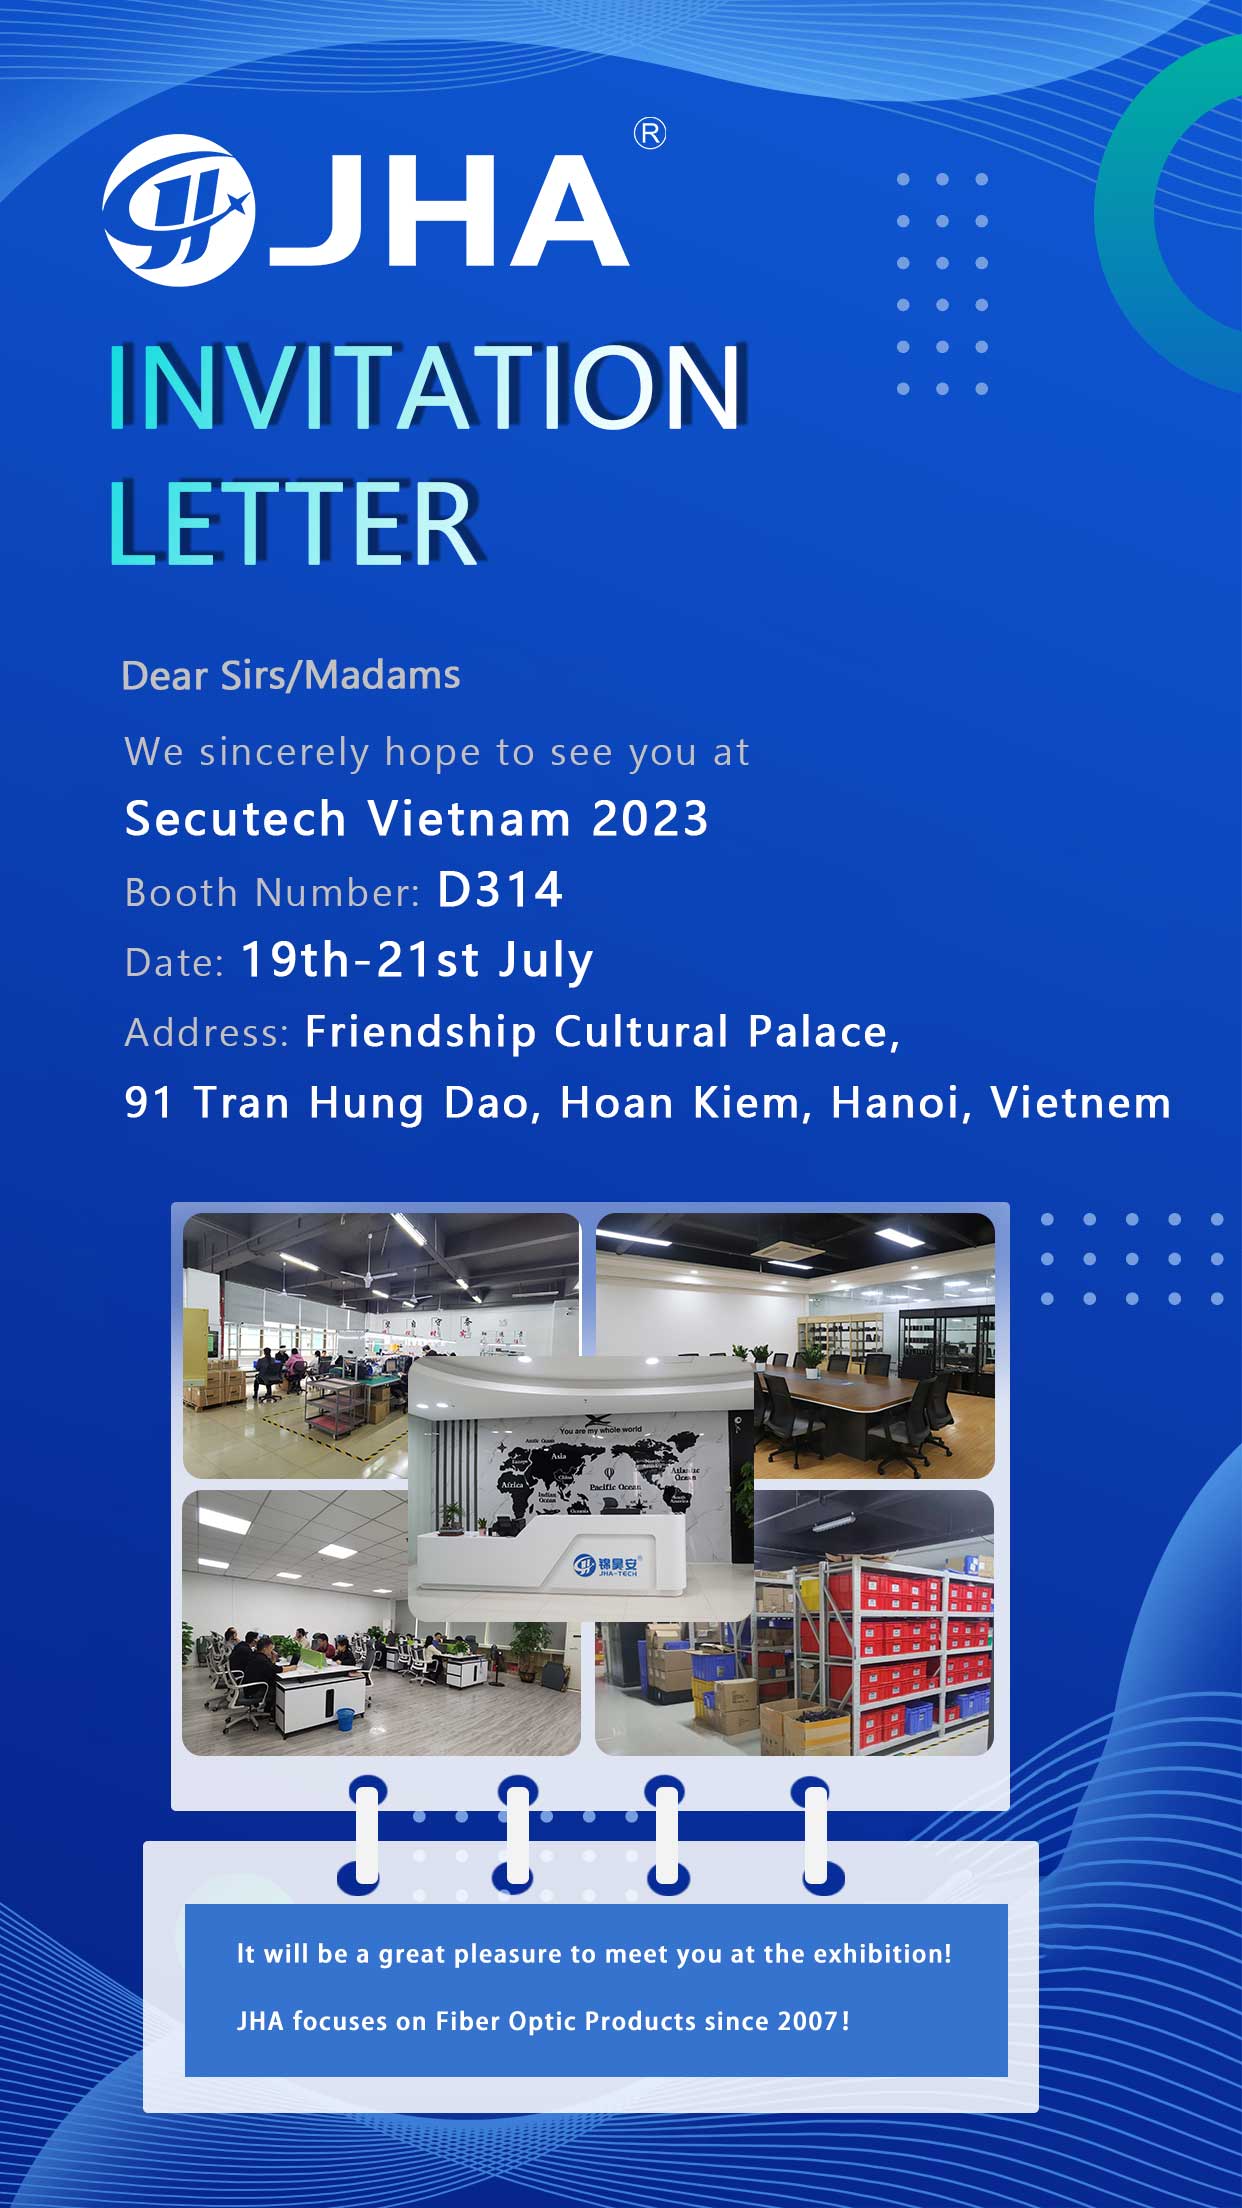 Únase a nosotros en Secutech Vietnam 2023 - Número de stand D314